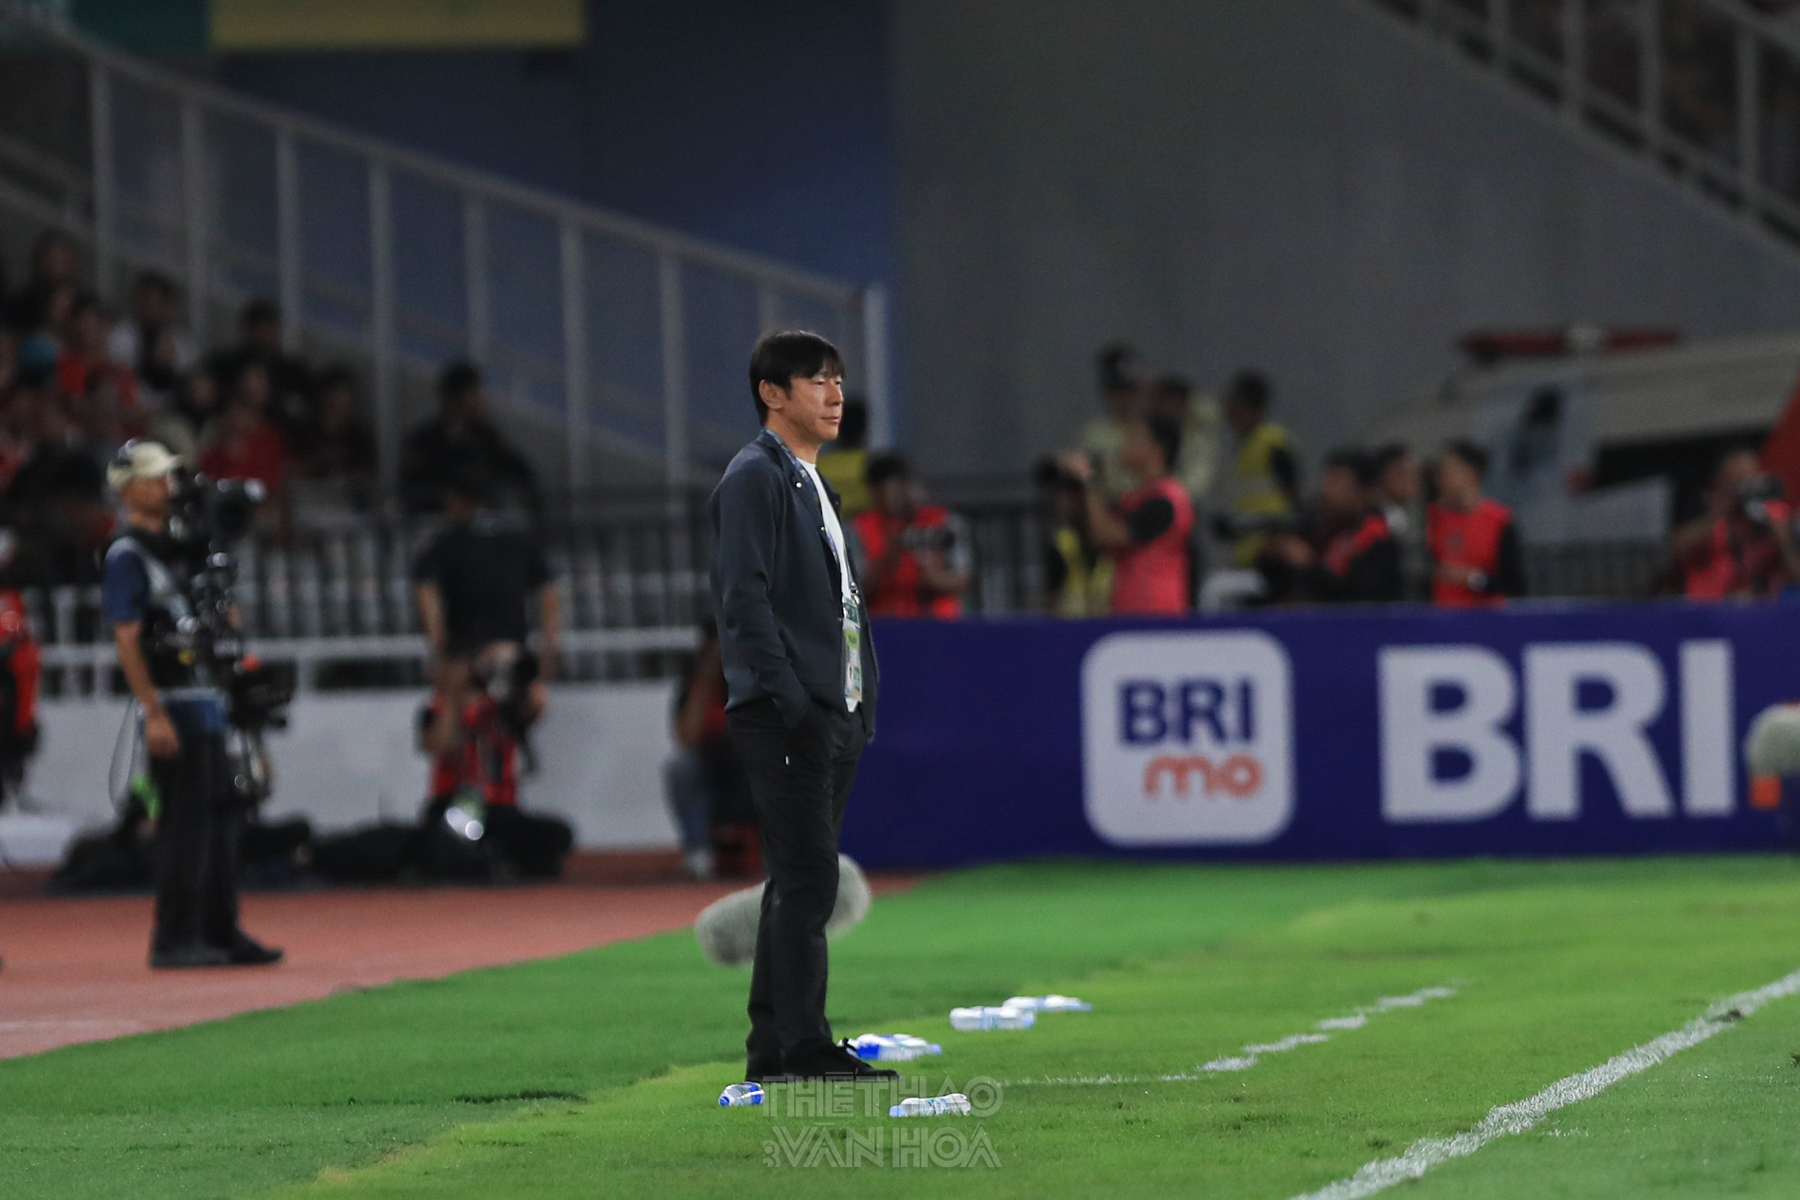 HLV Shin Tae Yong: ‘Indonesia muốn thắng trên sân nhà của Việt Nam’